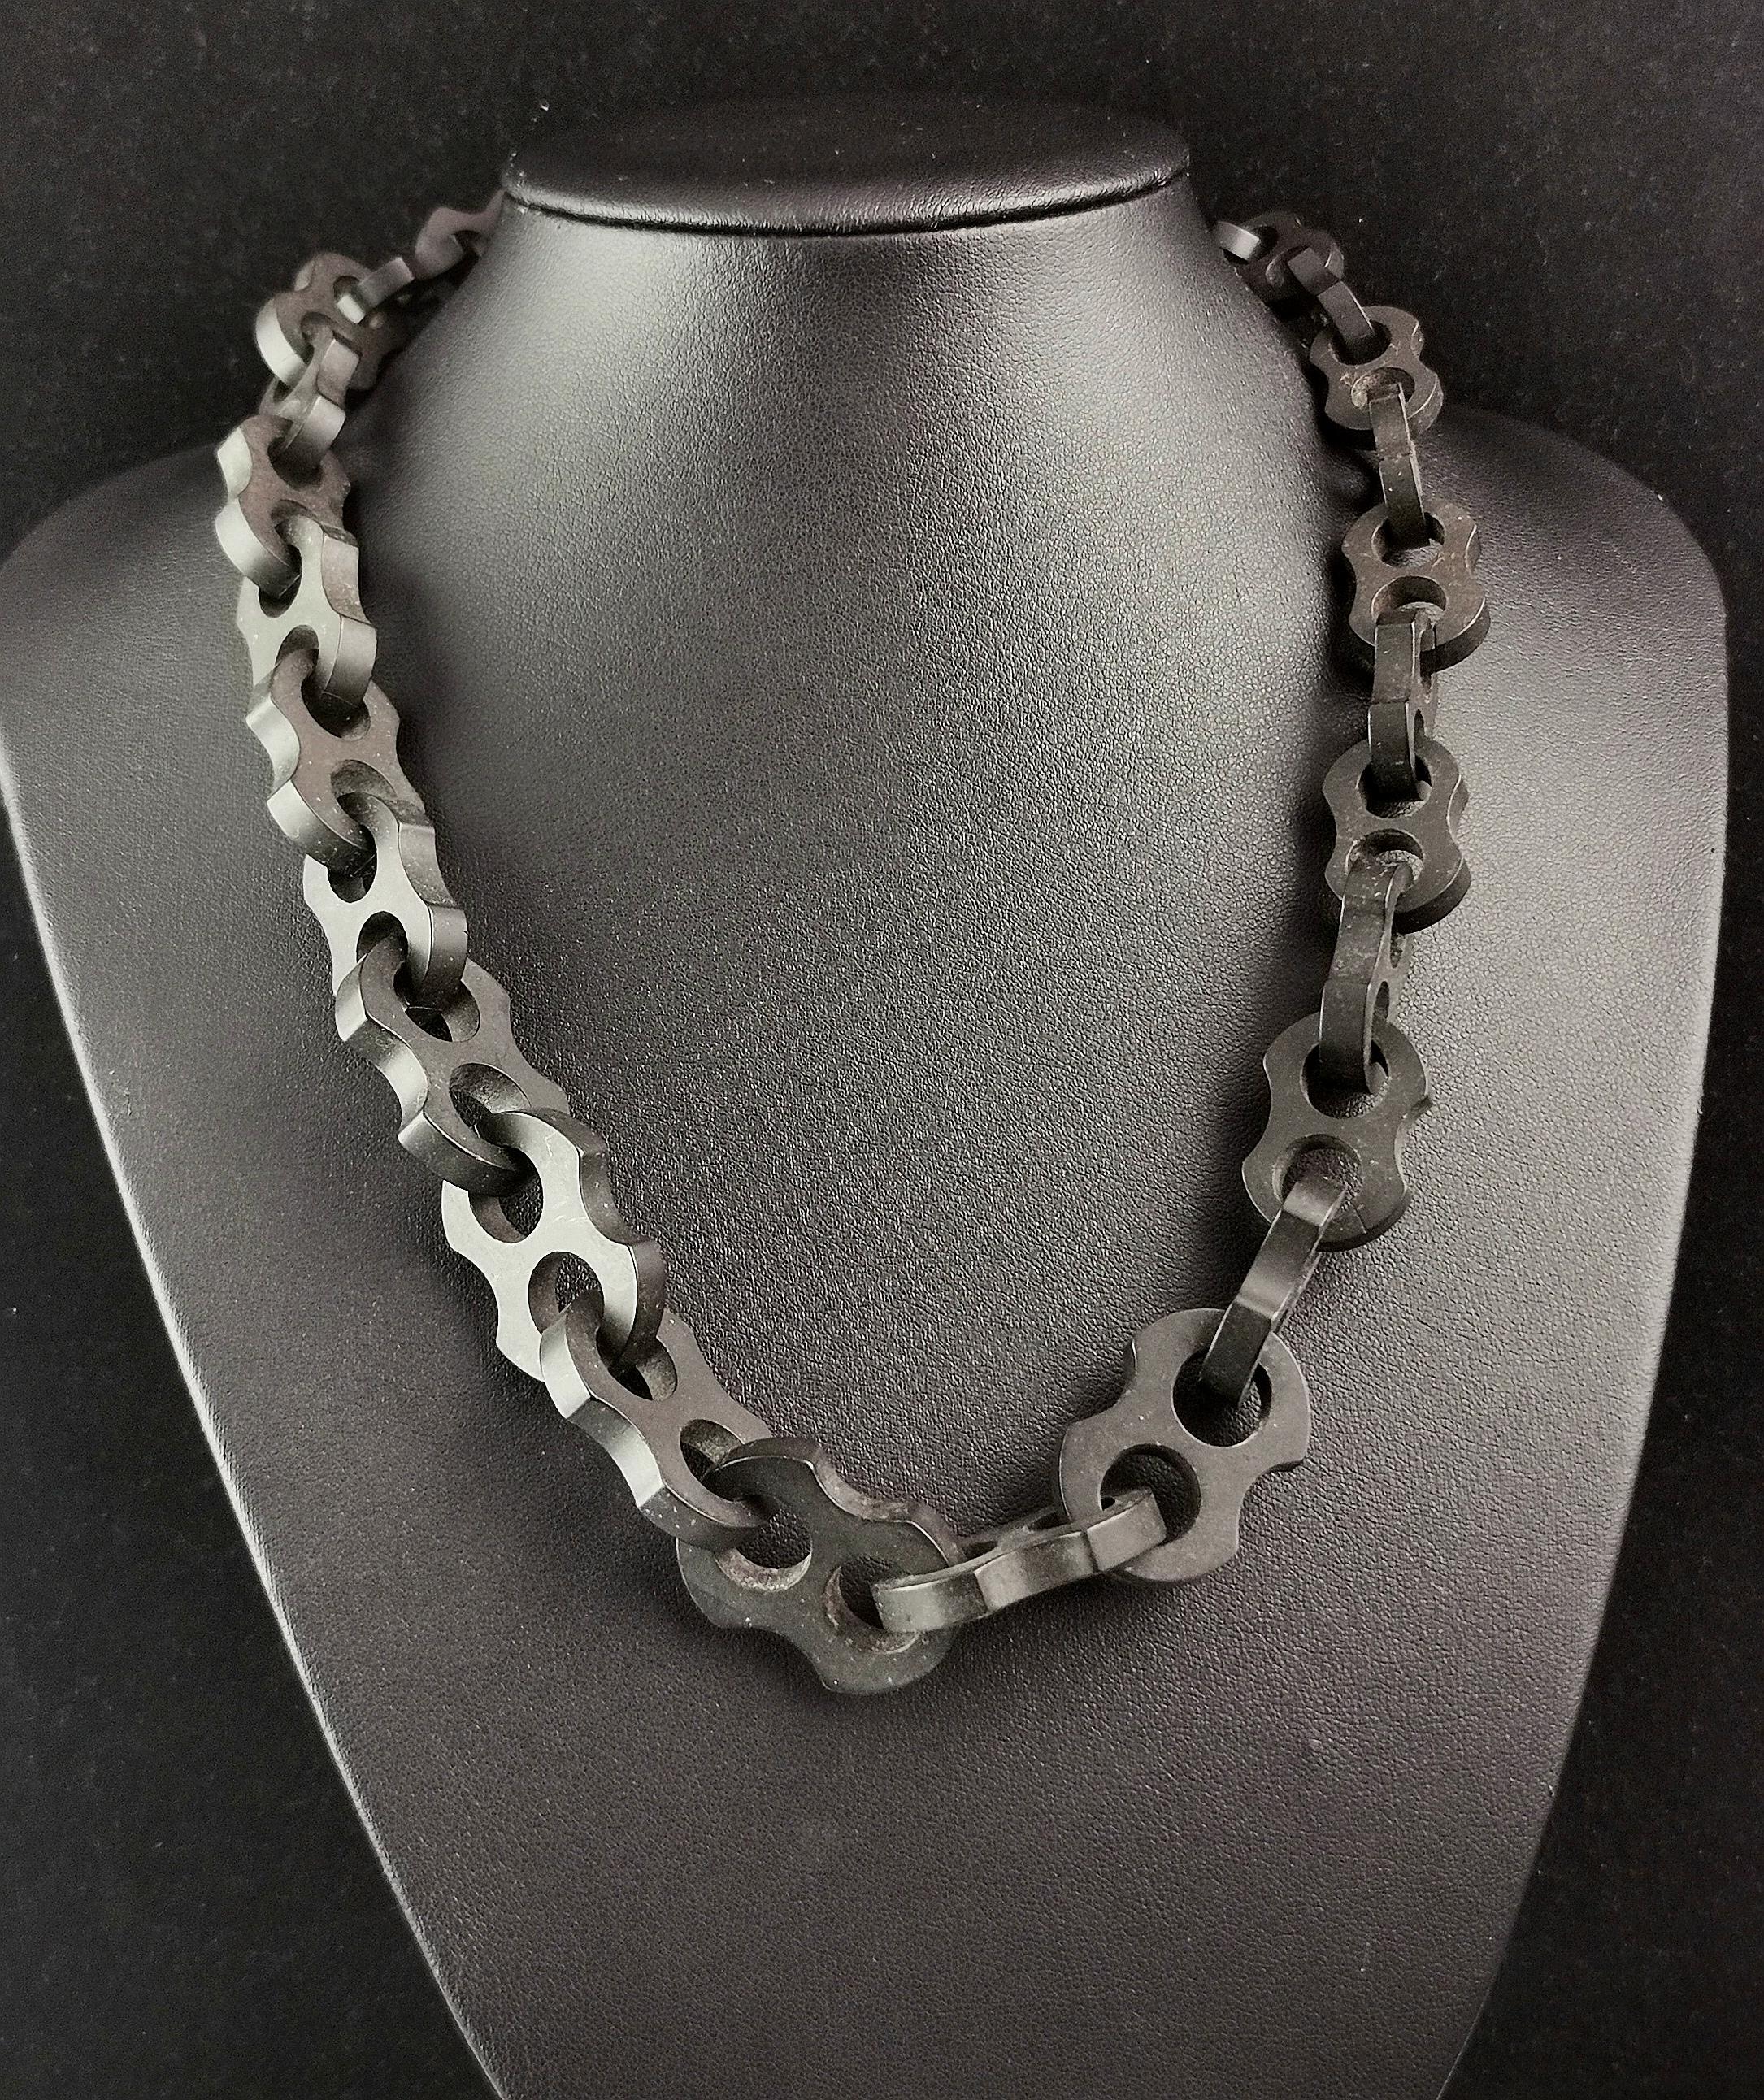 Eine attraktive und ungewöhnliche antike viktorianische Vulkanit-Halskette.

Die Halskette besteht aus großen, klobigen, ausgefallenen Gliedern im Marinestil, die über die gesamte Länge ineinandergreifen. Sie wird mit einem schwarz lackierten